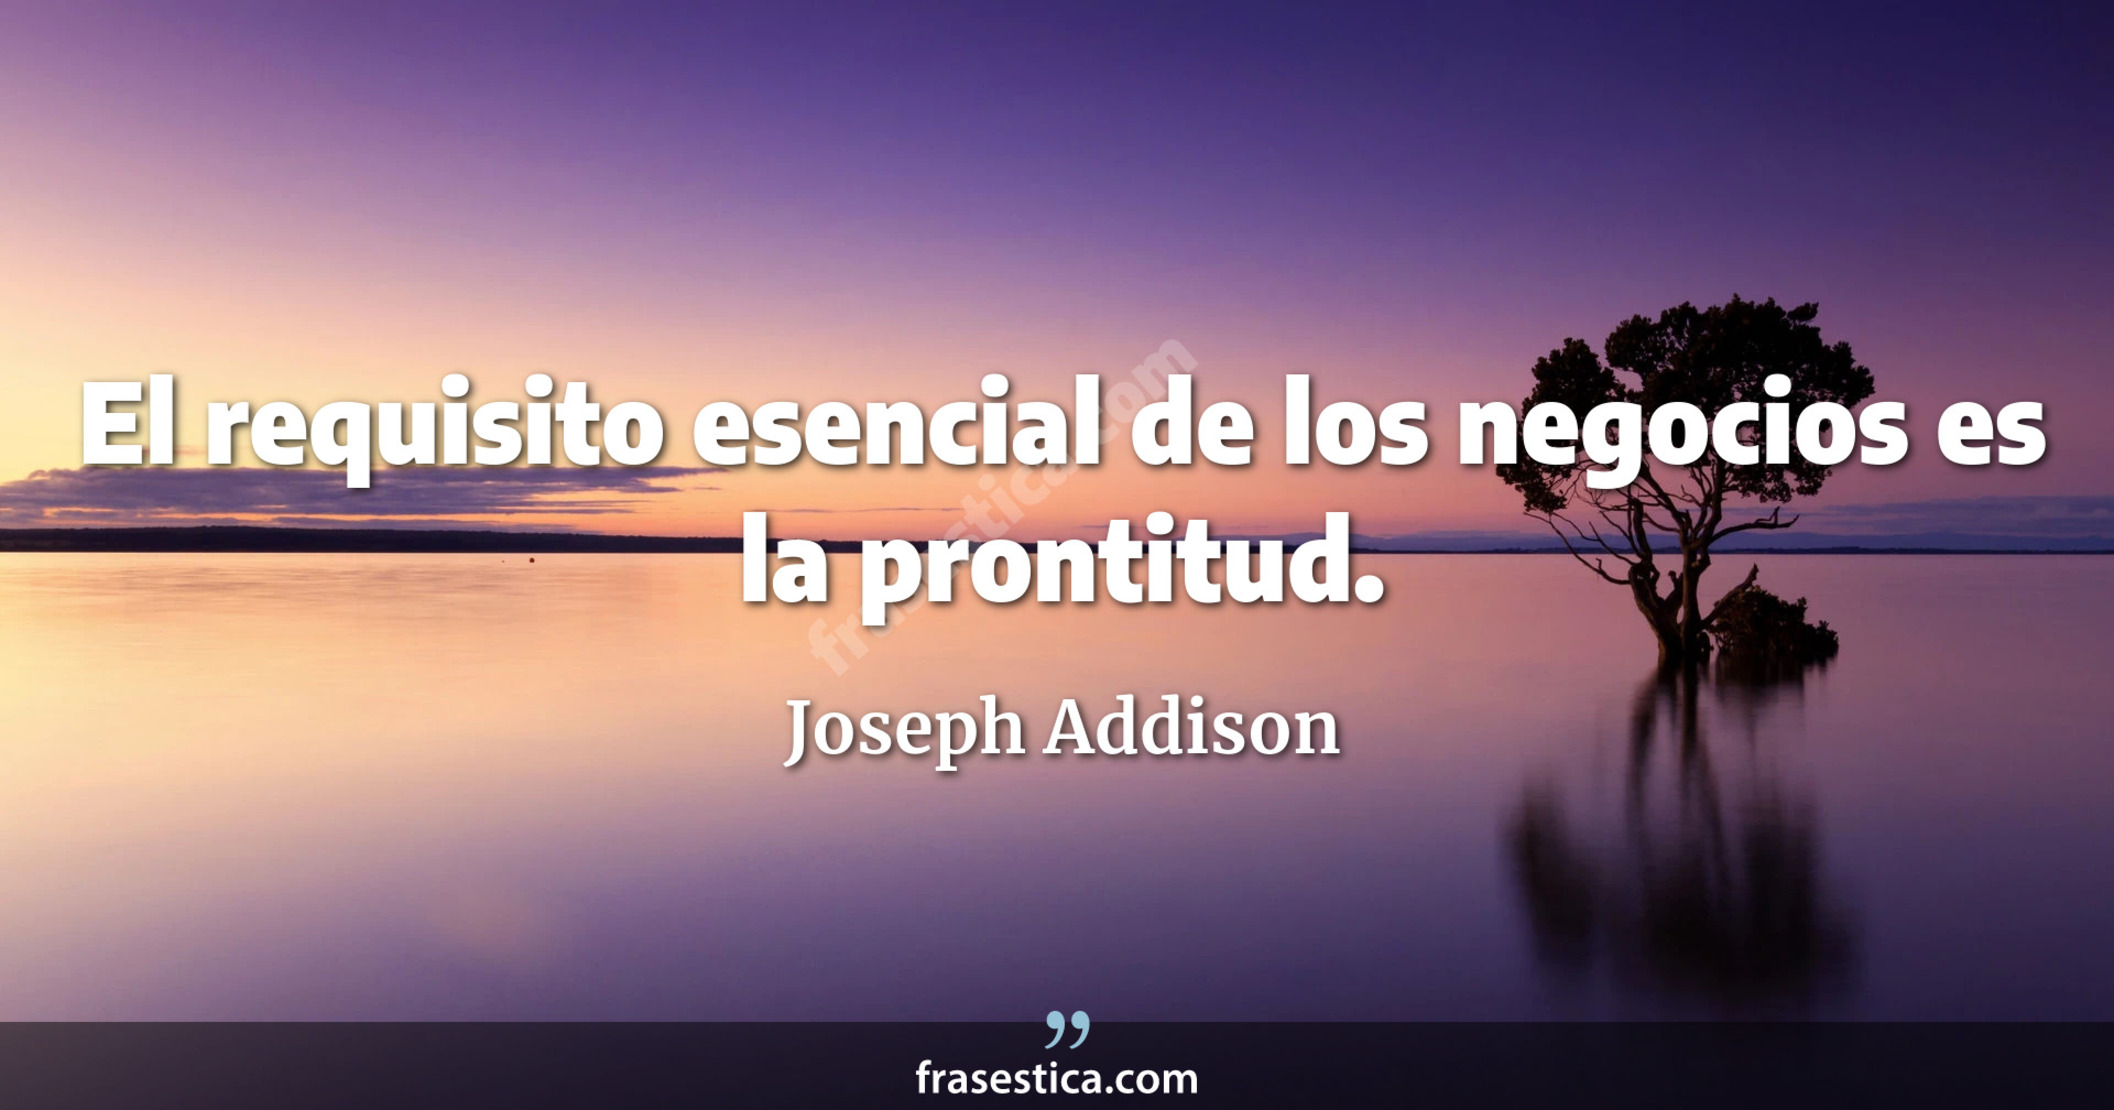 El requisito esencial de los negocios es la prontitud. - Joseph Addison